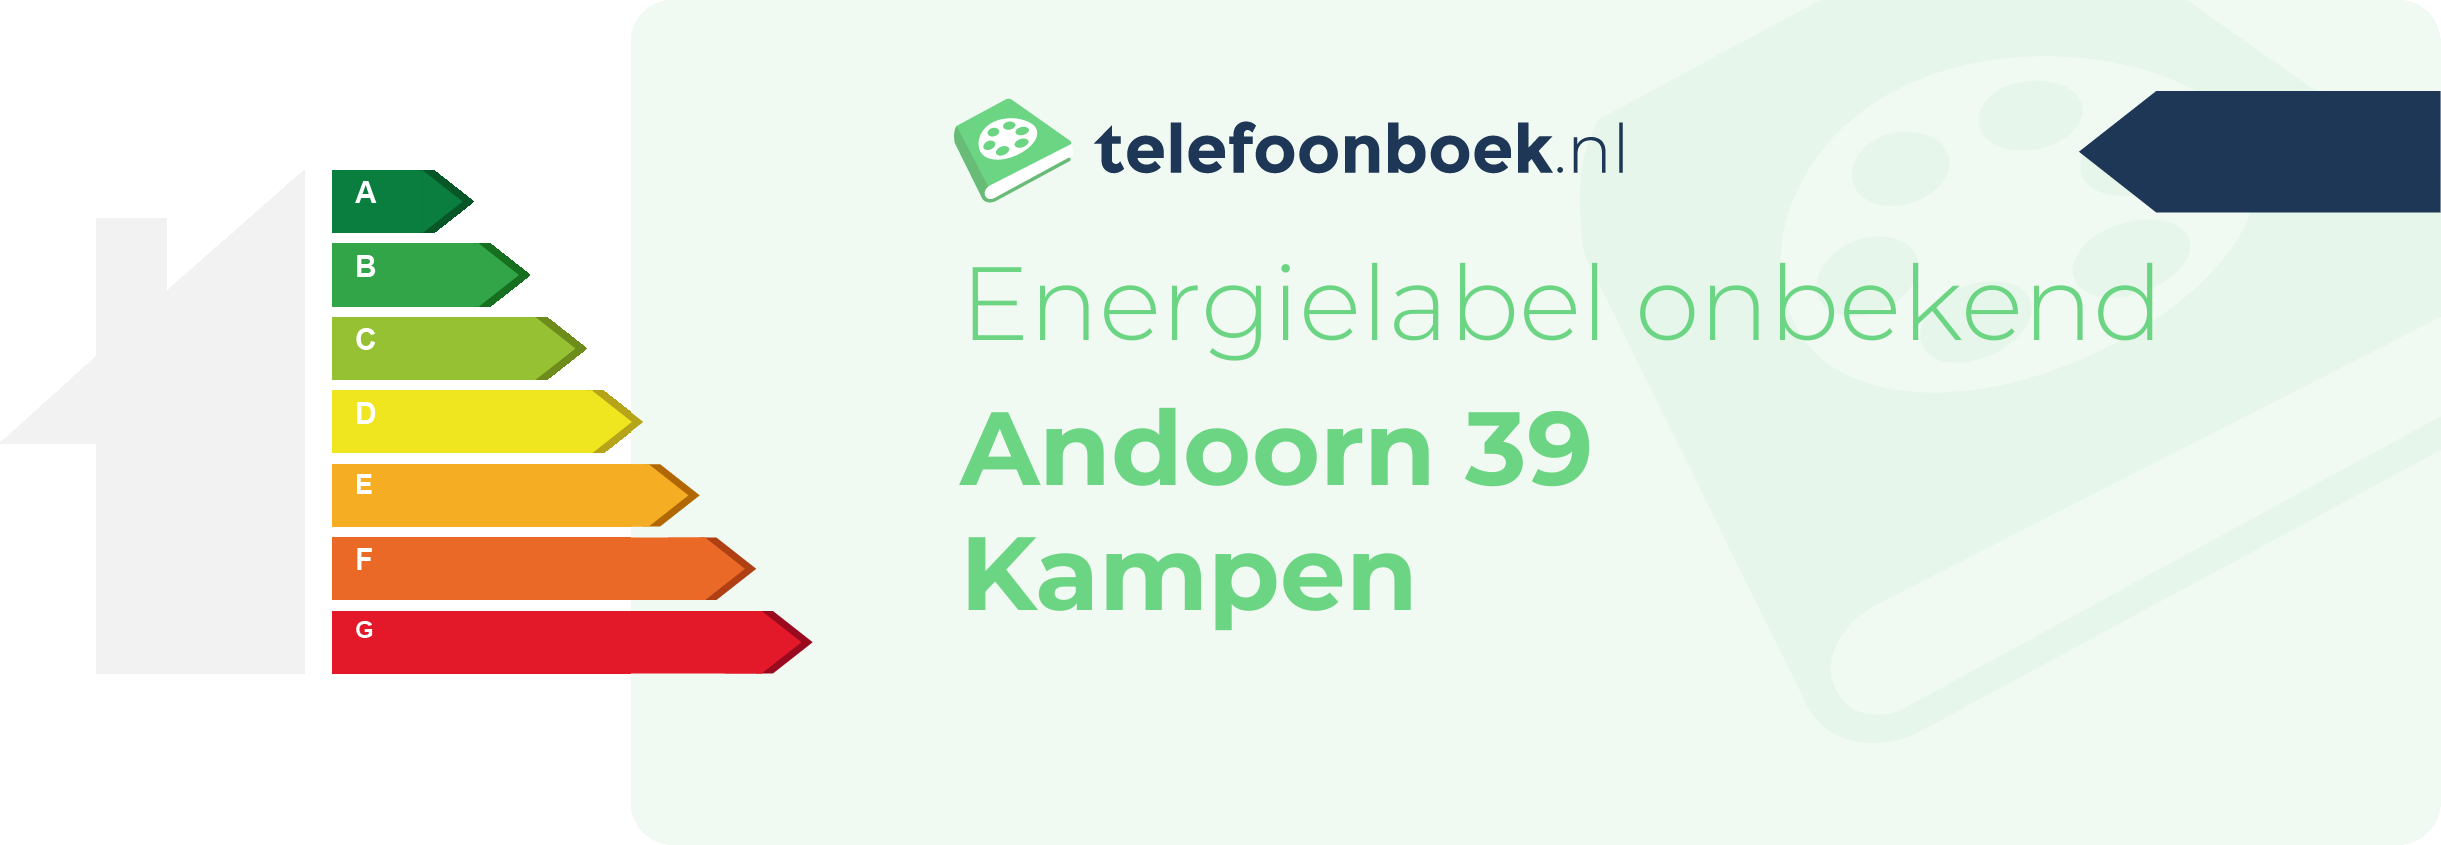 Energielabel Andoorn 39 Kampen